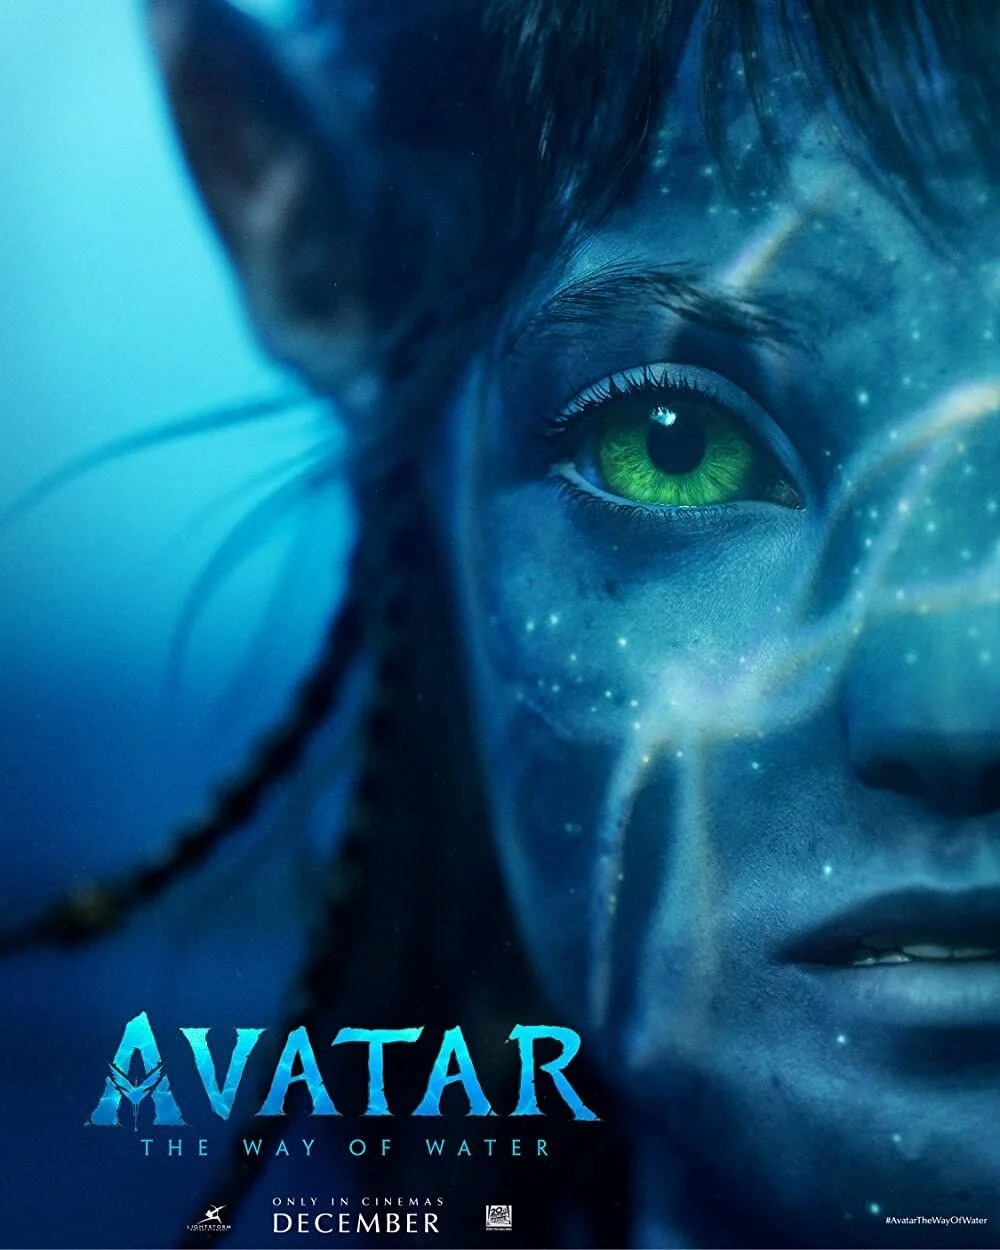 Yönetmen açıkladı: Avatar 2 için neden 13 yıl bekledi!